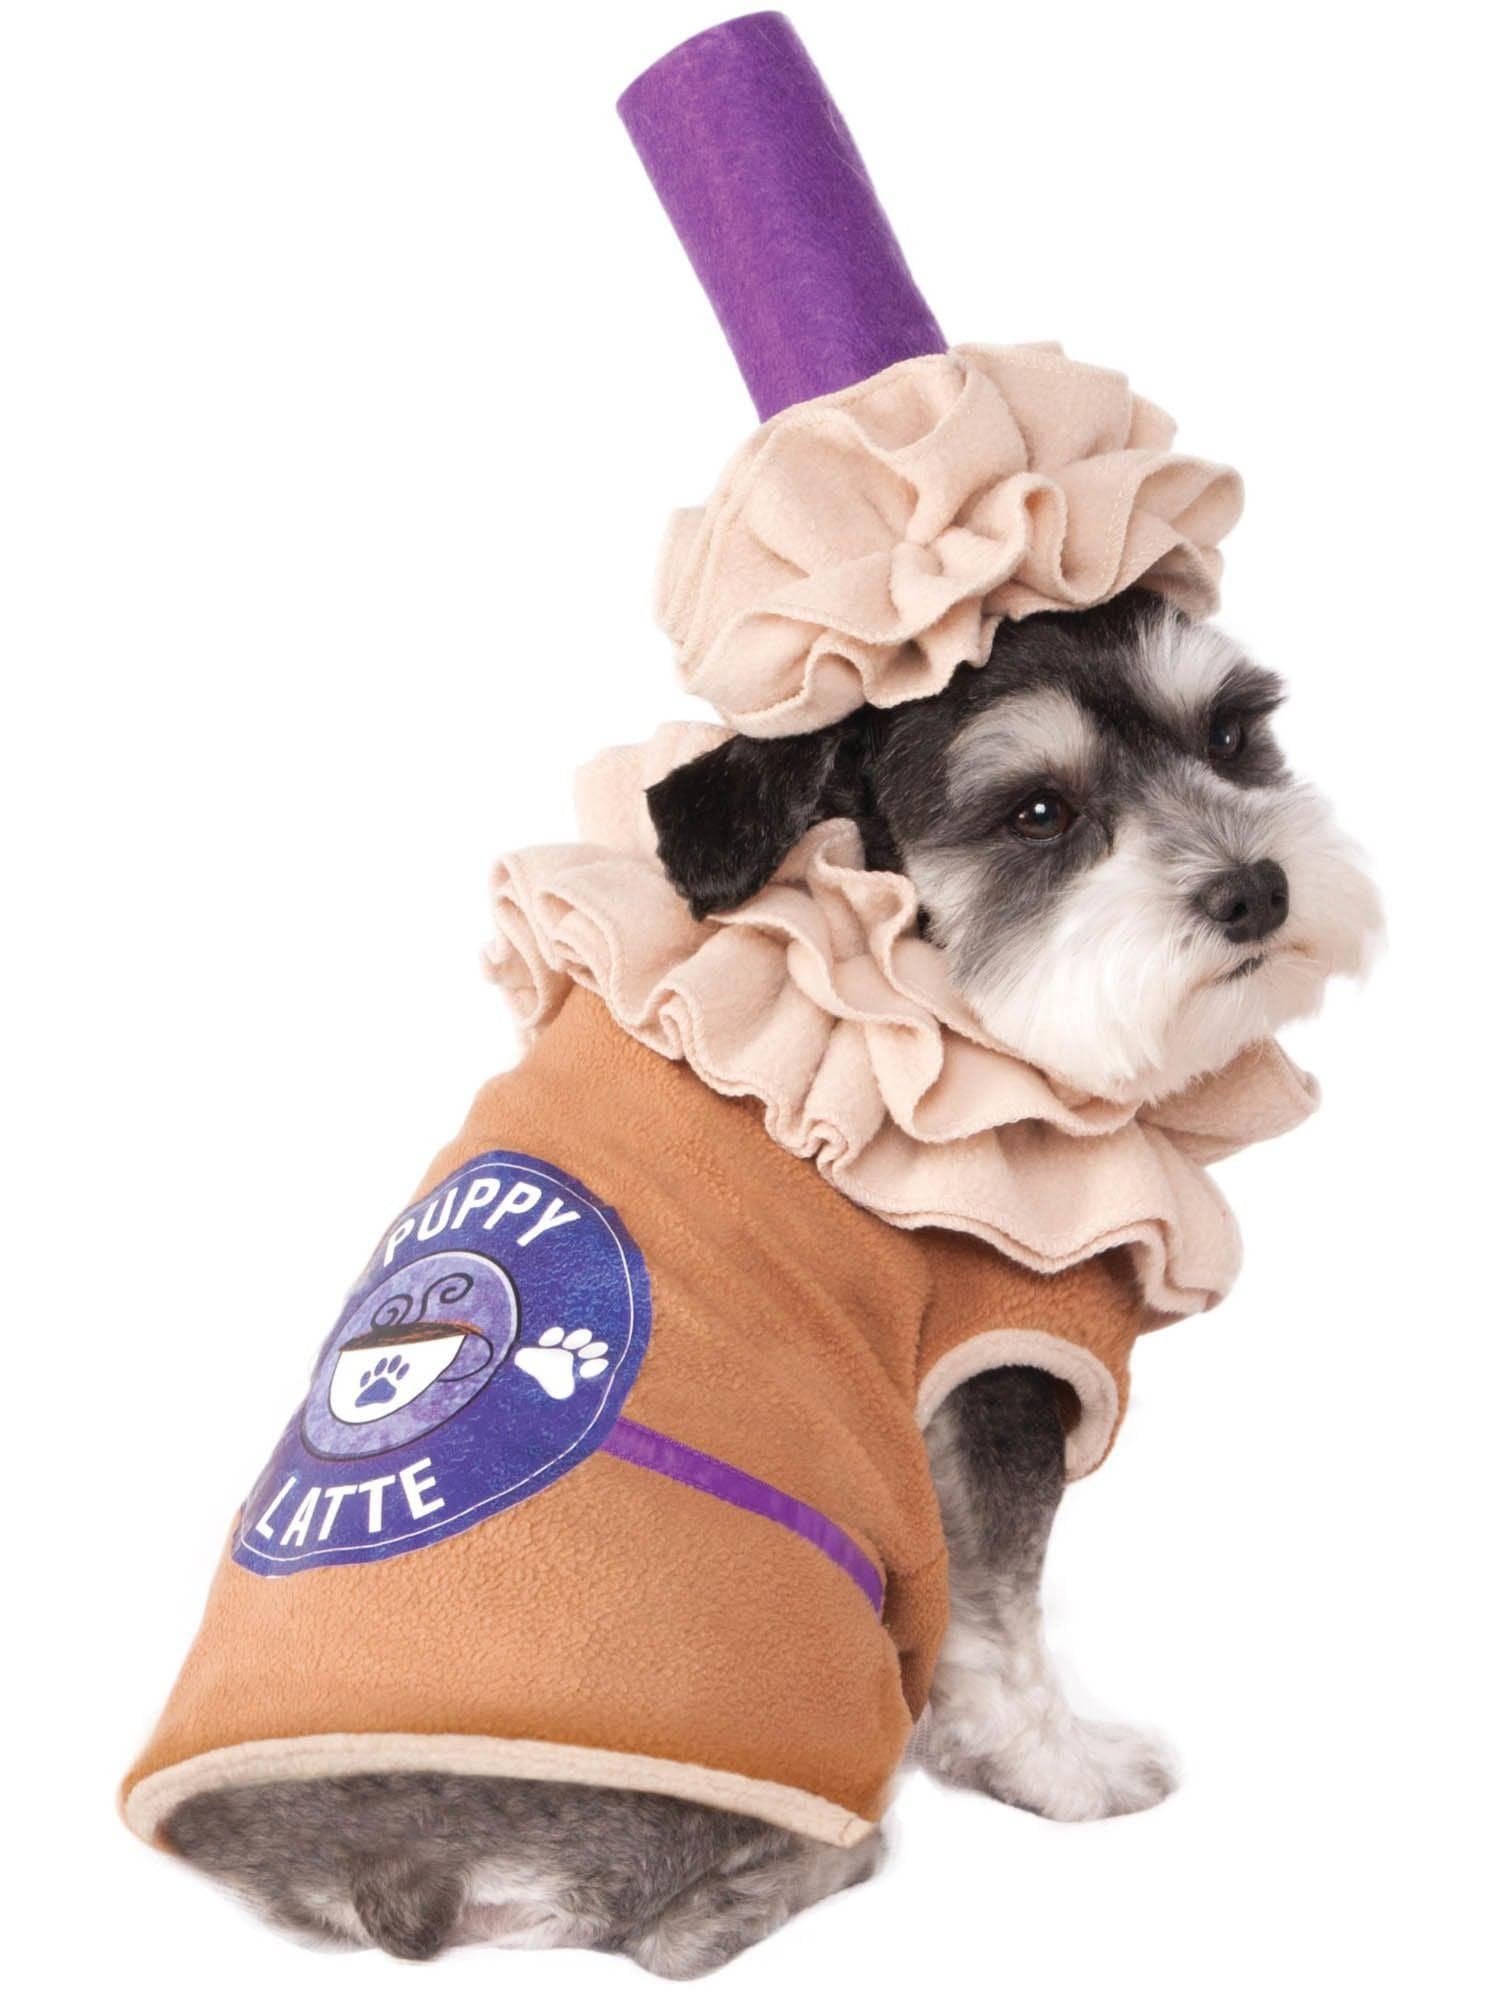 Puppy Latte Pet Costume - costumes.com